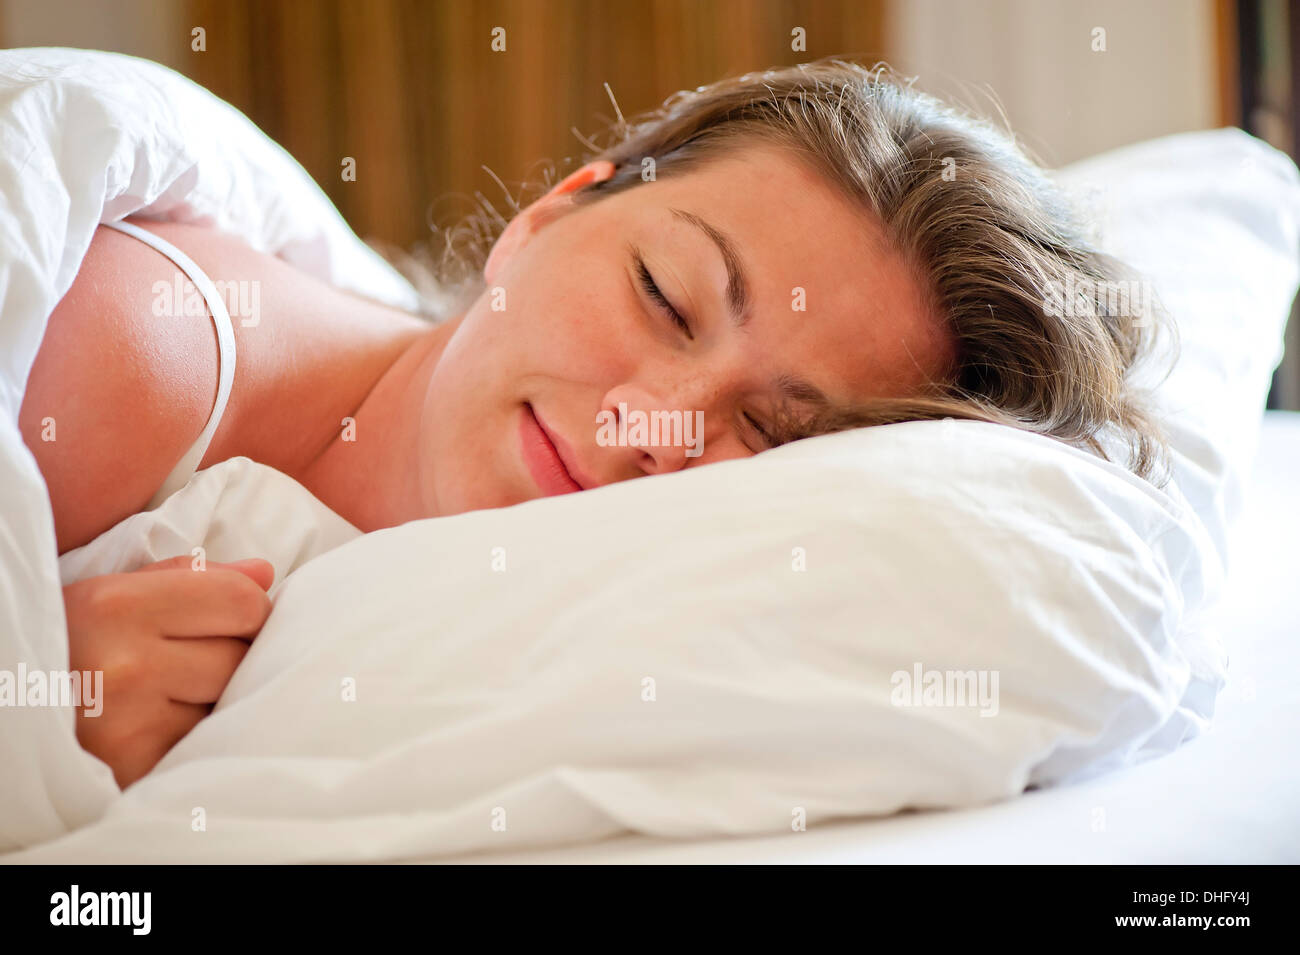 Frau schläft auf einem schneeweißen Bett am Morgen Stockfoto